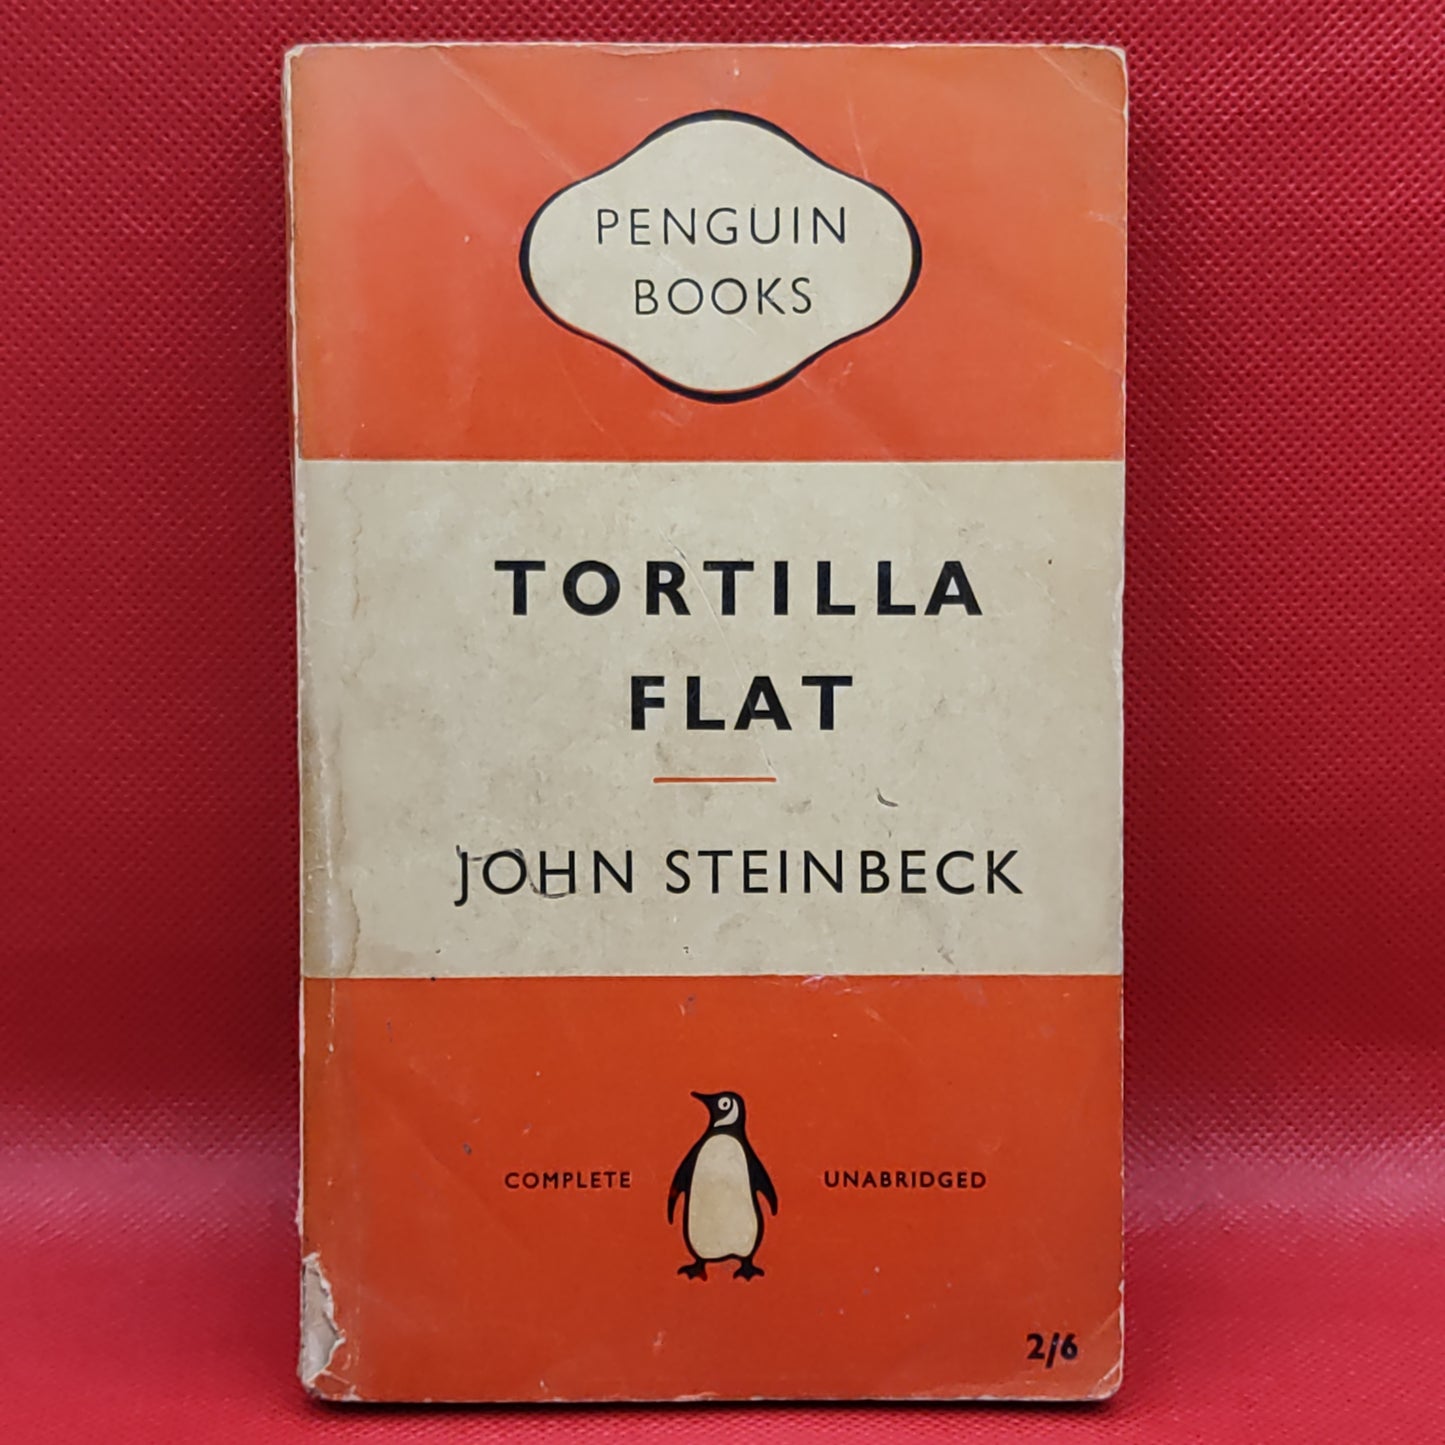 TORTILLA FLAT - JOHN STEINBECK